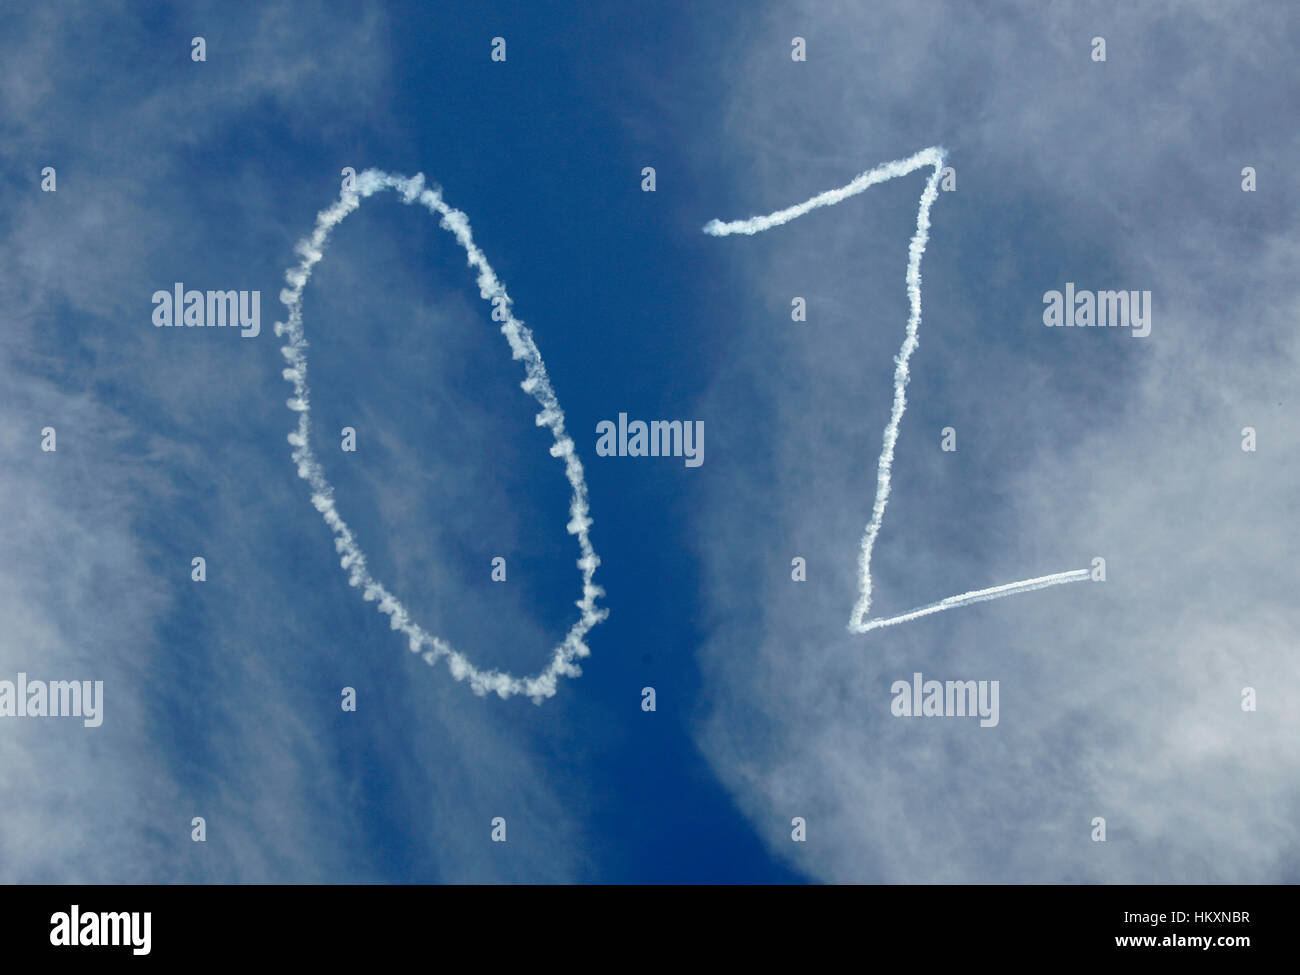 Die Kurzform für Australien "oz" als einen Kondensstreifen am Himmel geschrieben Stockfoto